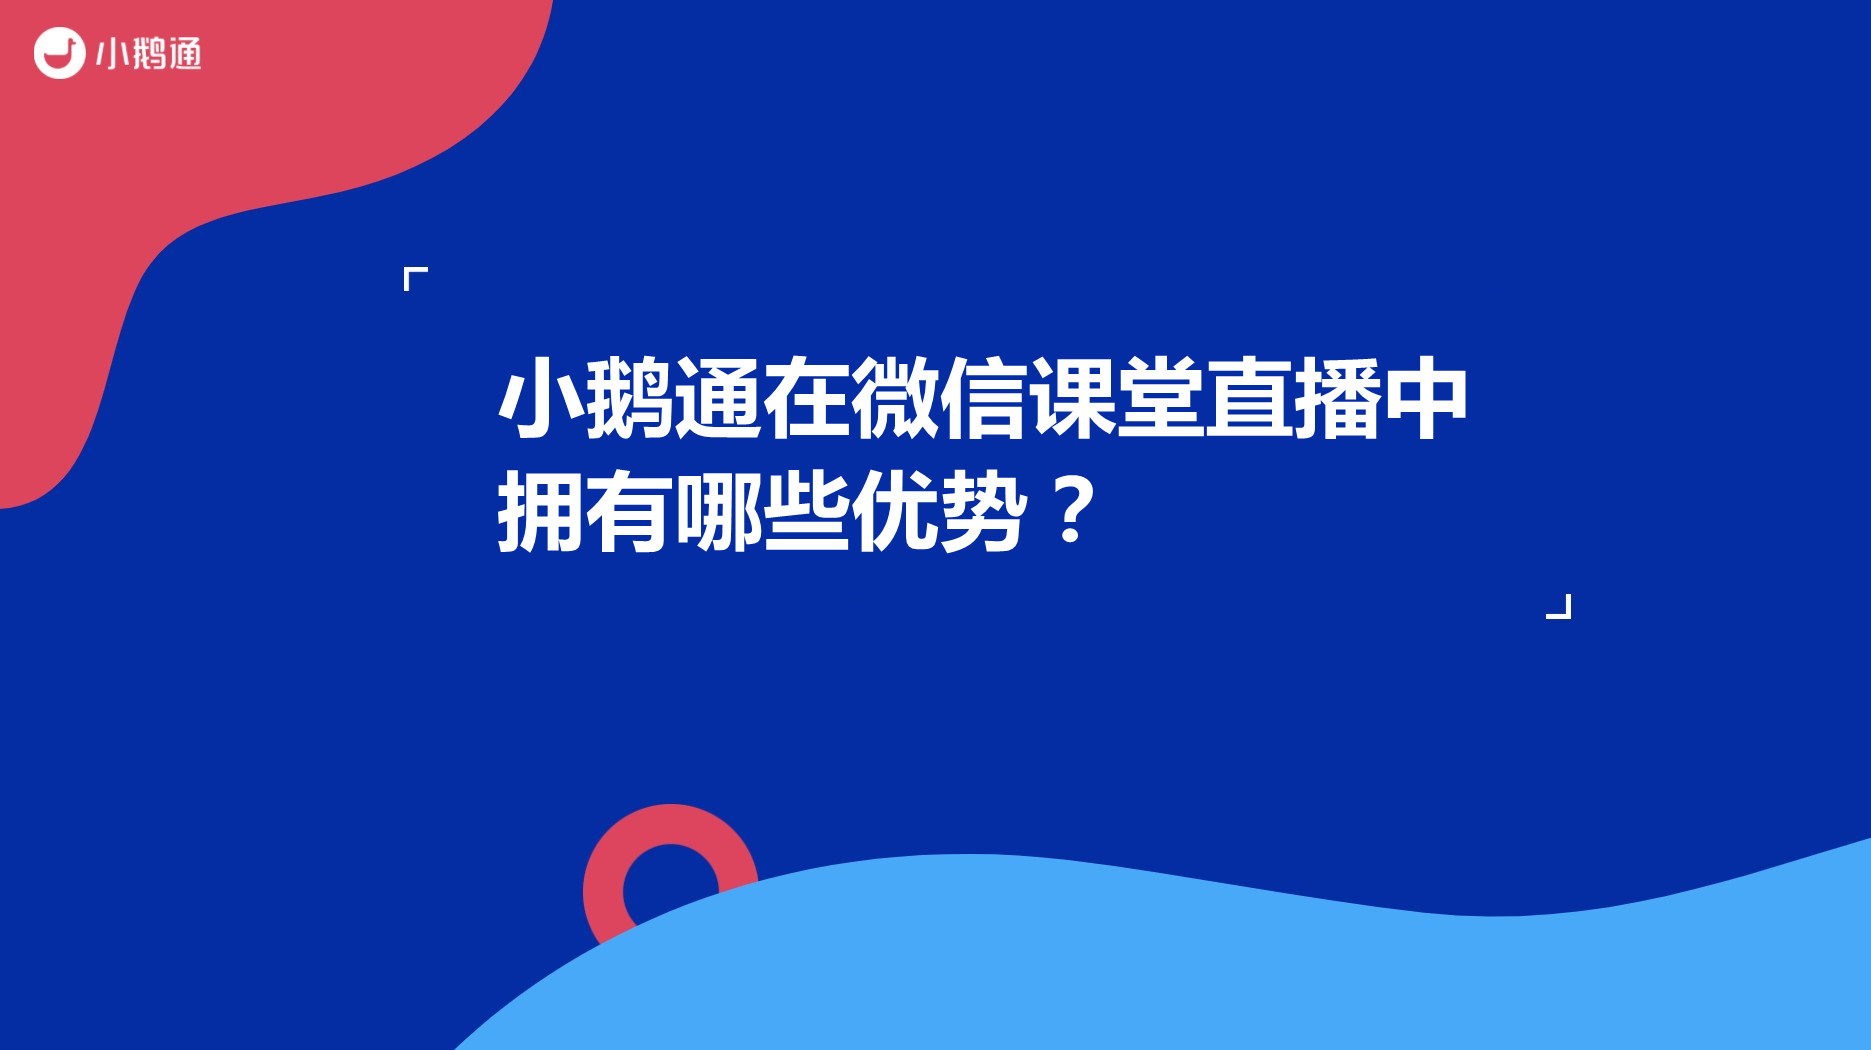 北京小鹅通在微信课堂直播中拥有哪些优势？